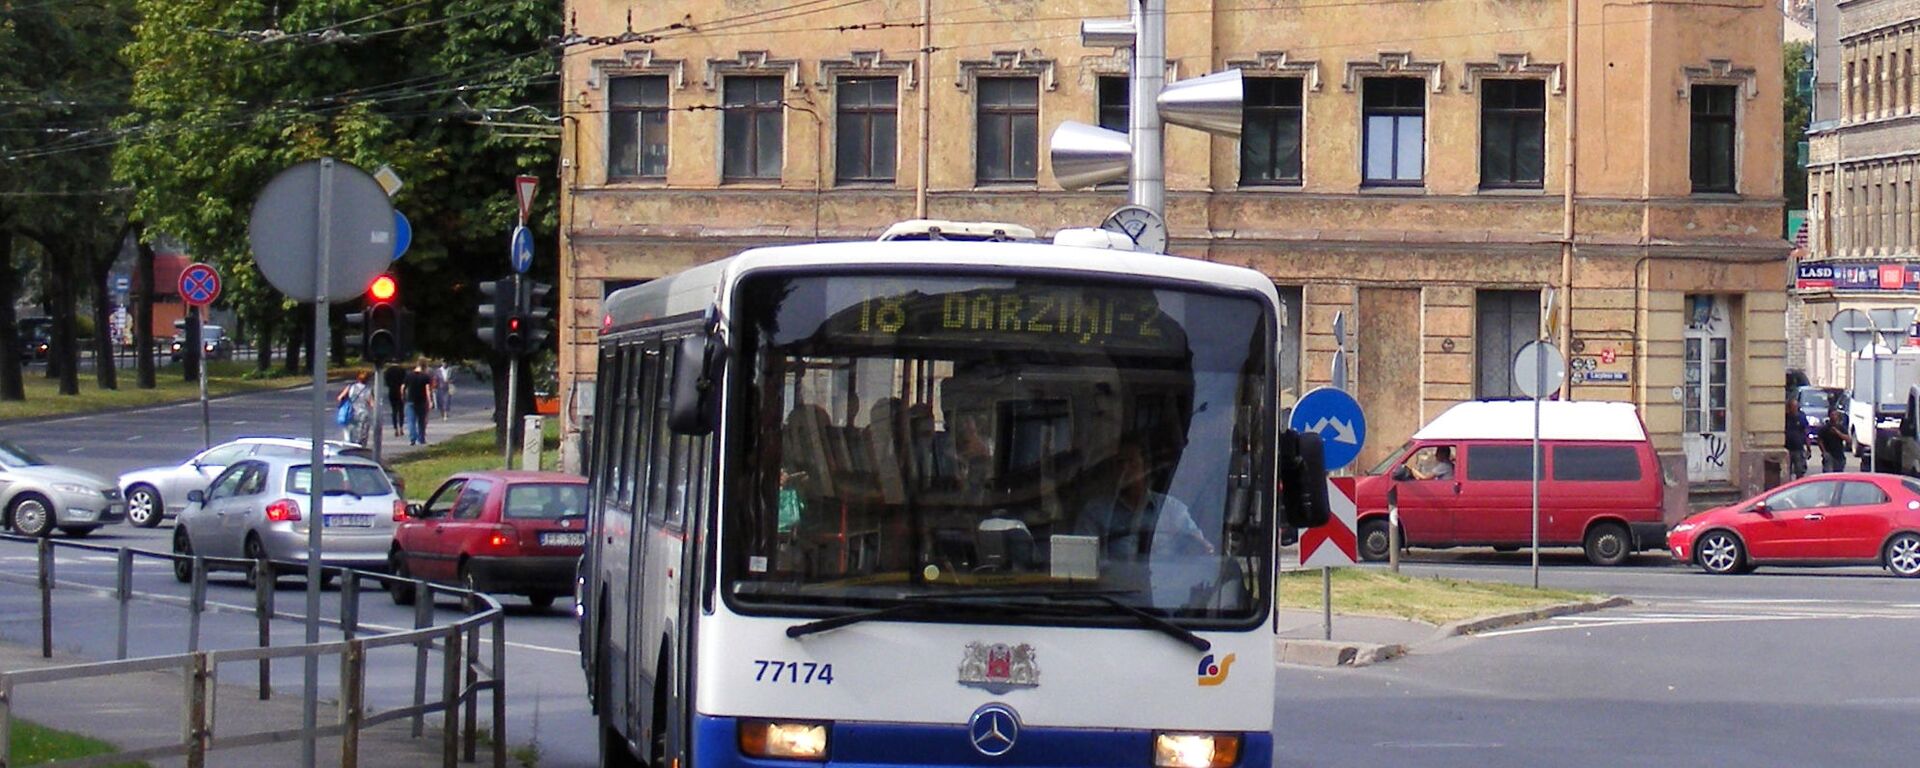 Автобус в Риге - Sputnik Латвия, 1920, 21.10.2021